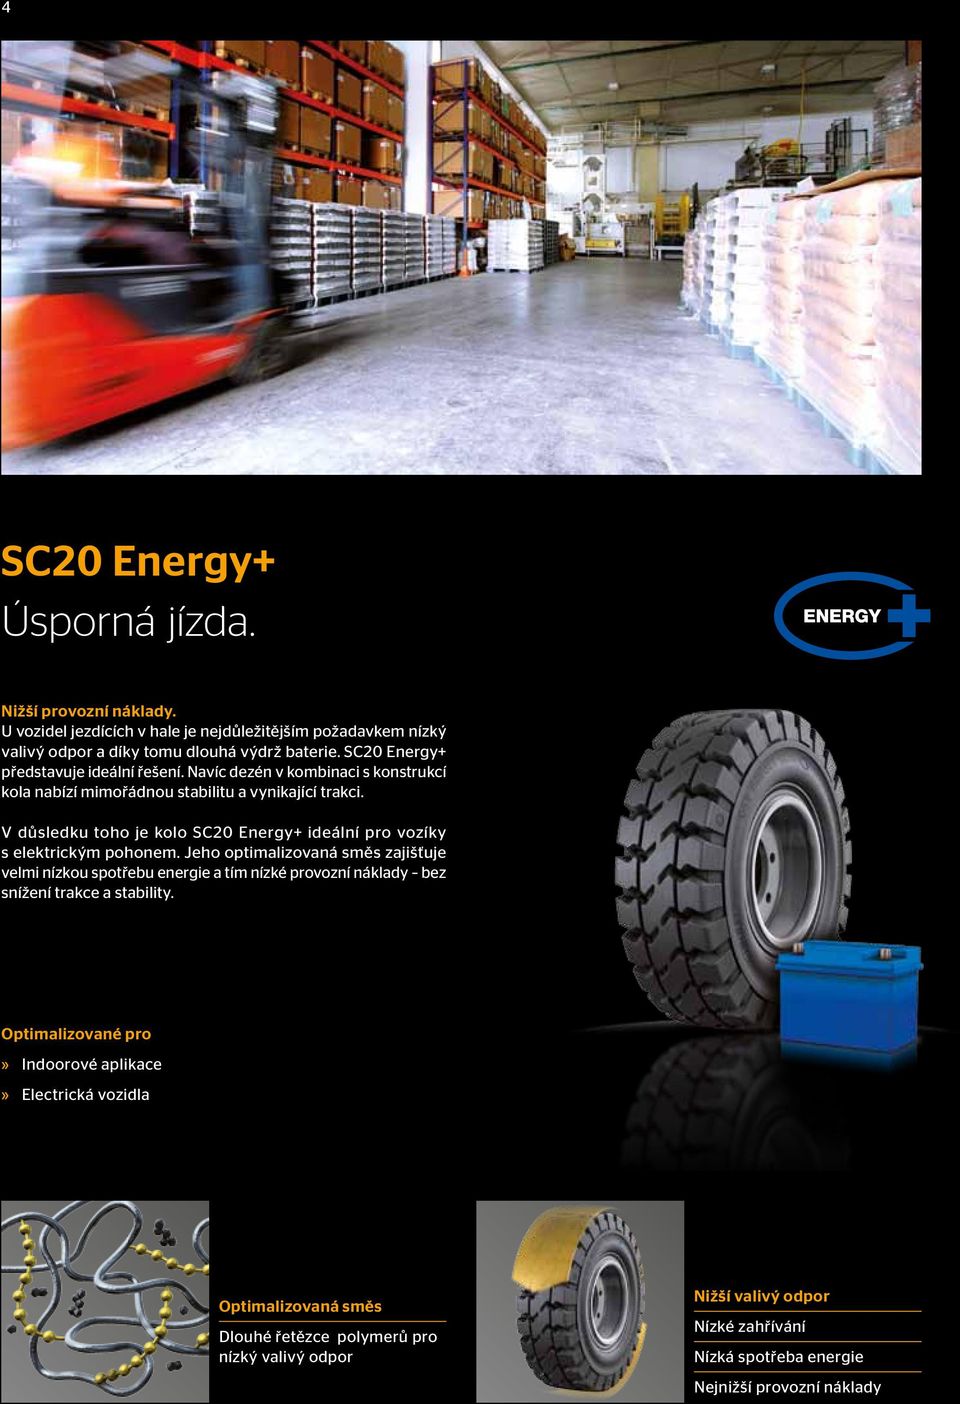 V důsledku toho je kolo SC20 Energy+ ideální pro vozíky s elektrickým pohonem.